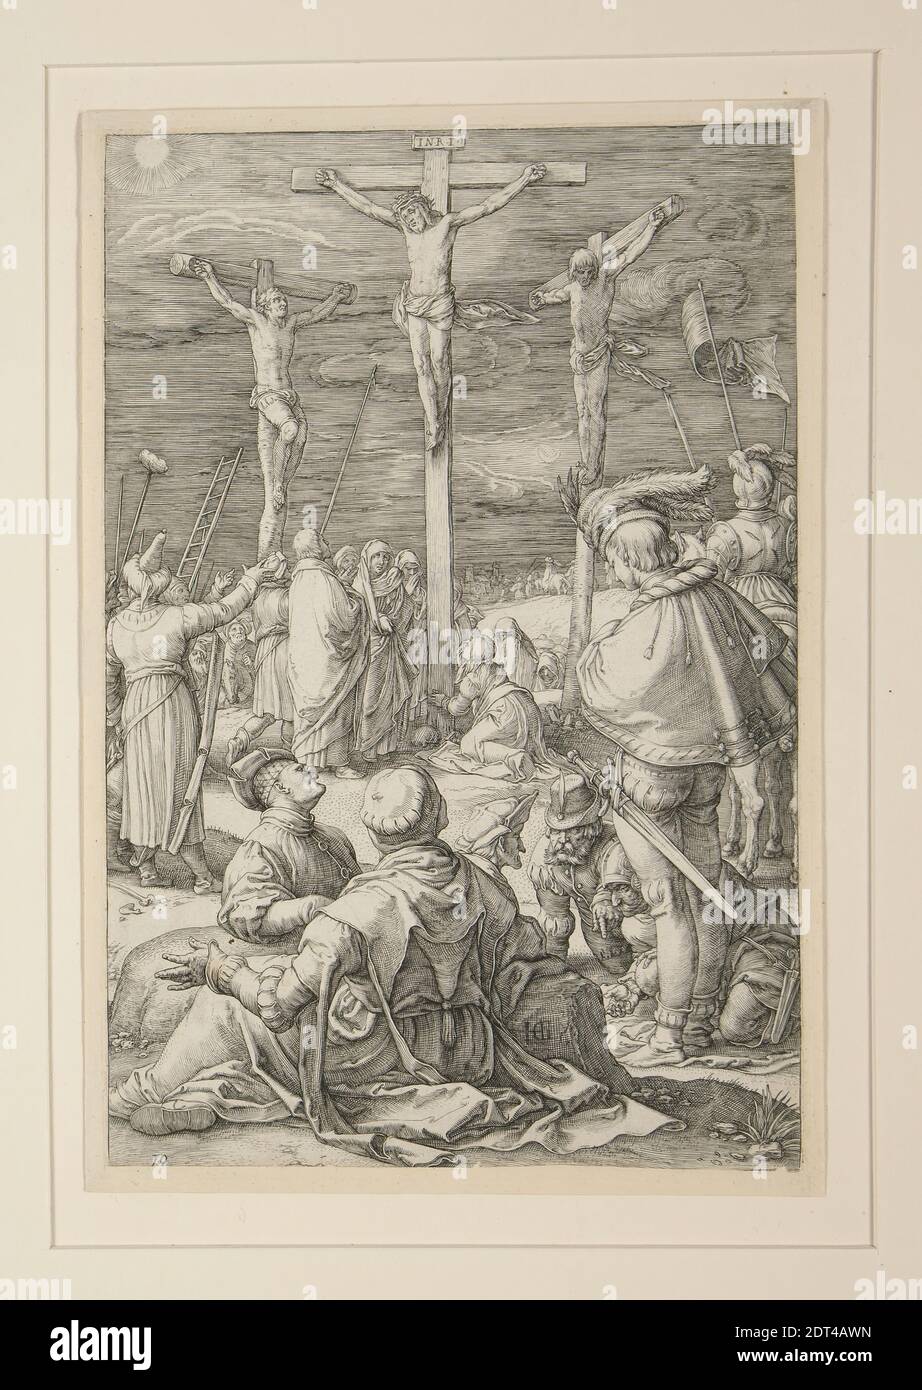 Artista: Hendrick Goltzius, olandese, 1558–1617, la Crocifissione (Cristo sulla Croce), dalla Passione, n. 10 in una serie di 12 incisioni, incisione, platemark: 7 15/16 × 5 1/4 pollici. (20.2 × 13.3 cm), Made in the Netherlands, Dutch, 16 ° secolo, opere su carta - stampe Foto Stock